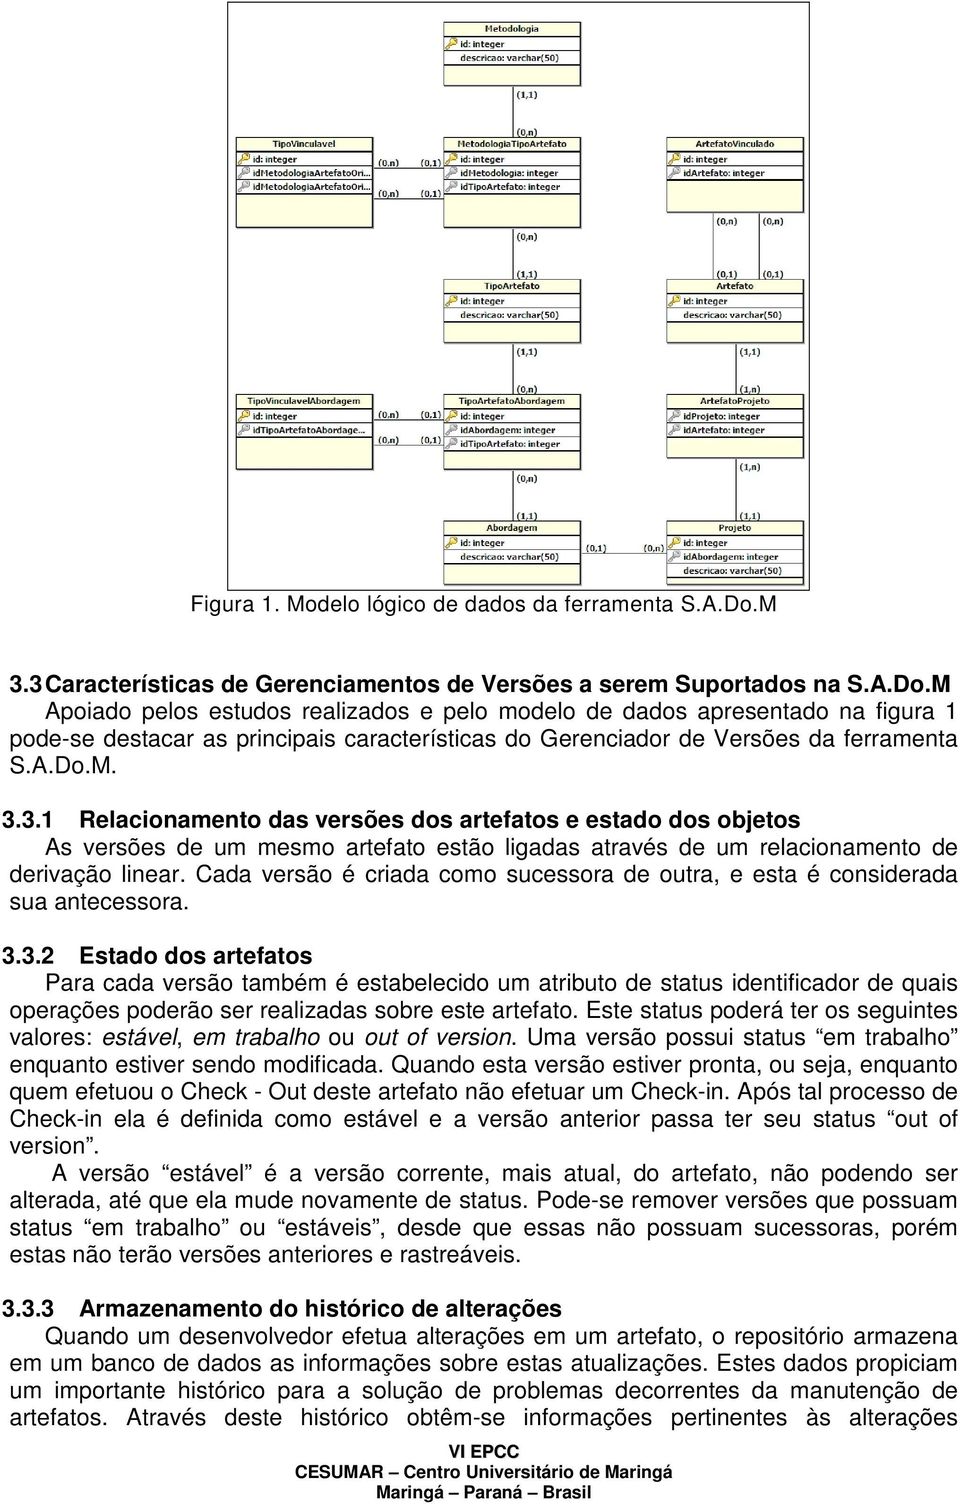 M Apoiado pelos estudos realizados e pelo modelo de dados apresentado na figura 1 pode-se destacar as principais características do Gerenciador de Versões da ferramenta S.A.Do.M. 3.